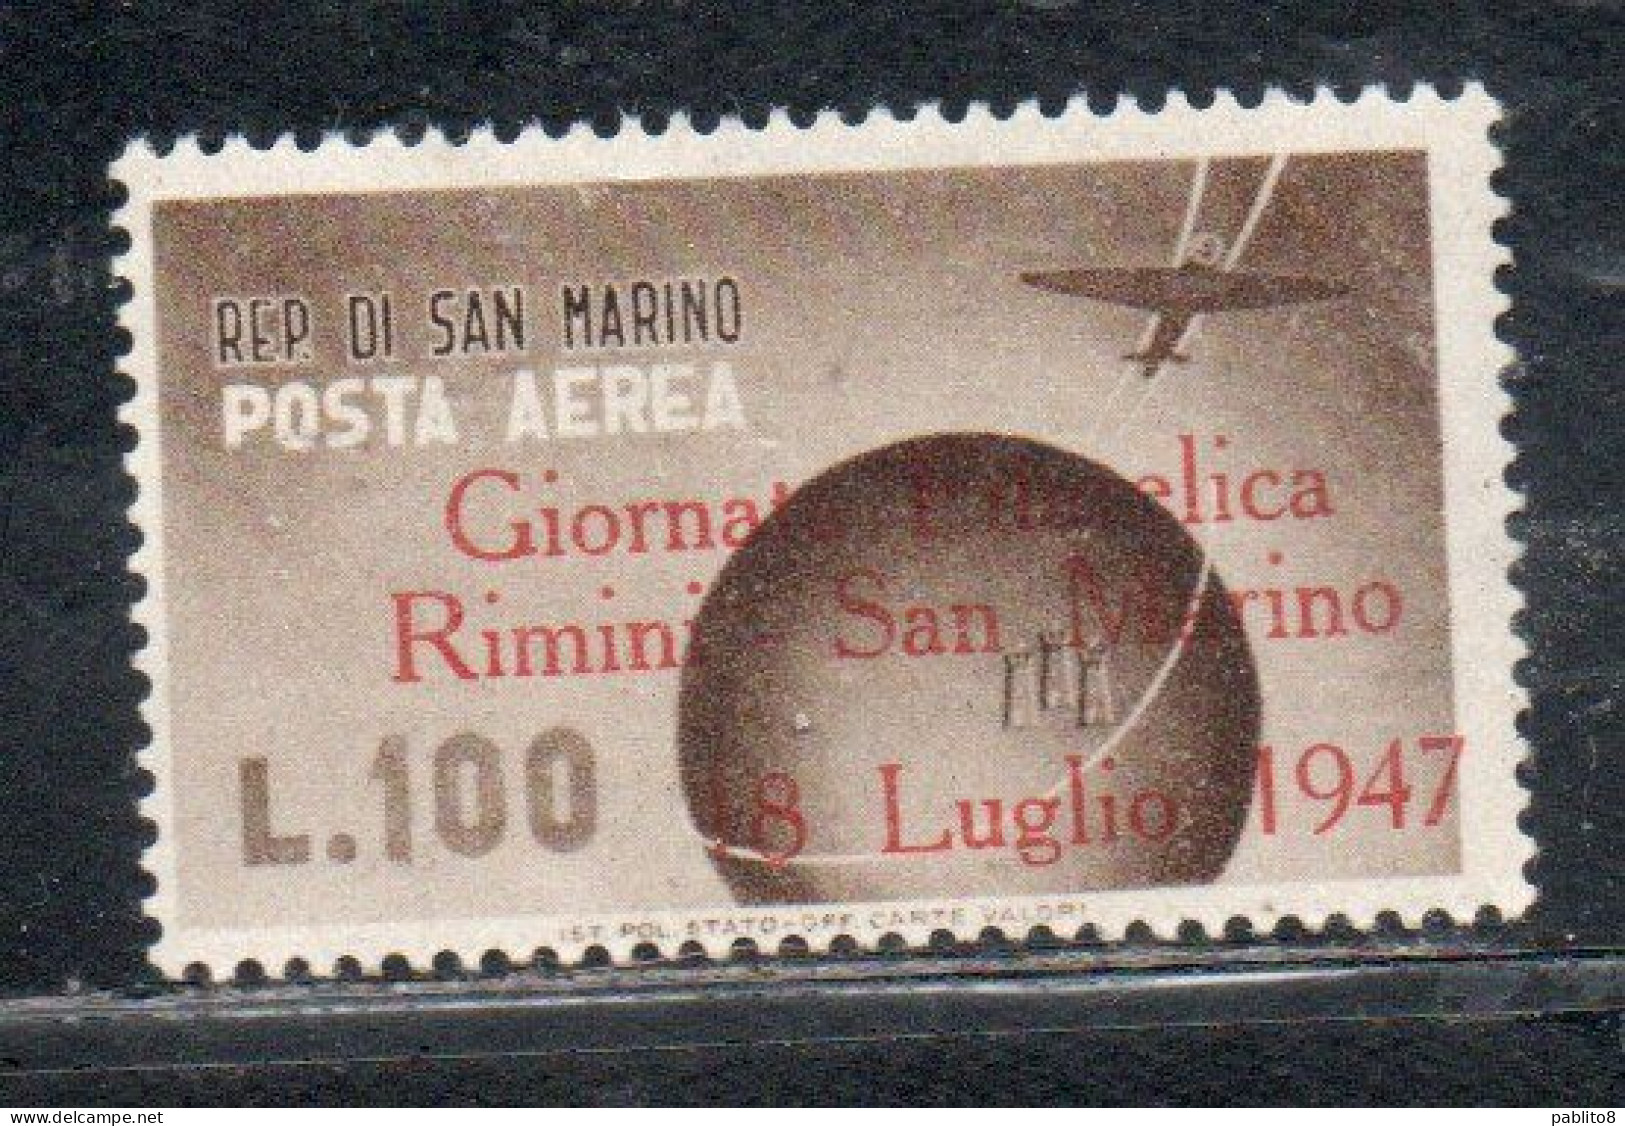 REPUBBLICA DI SAN MARINO 1947 POSTA AEREA AIR MAIL GIORNATA FILATELICA RIMINI LIRE 100 MNH - Poste Aérienne